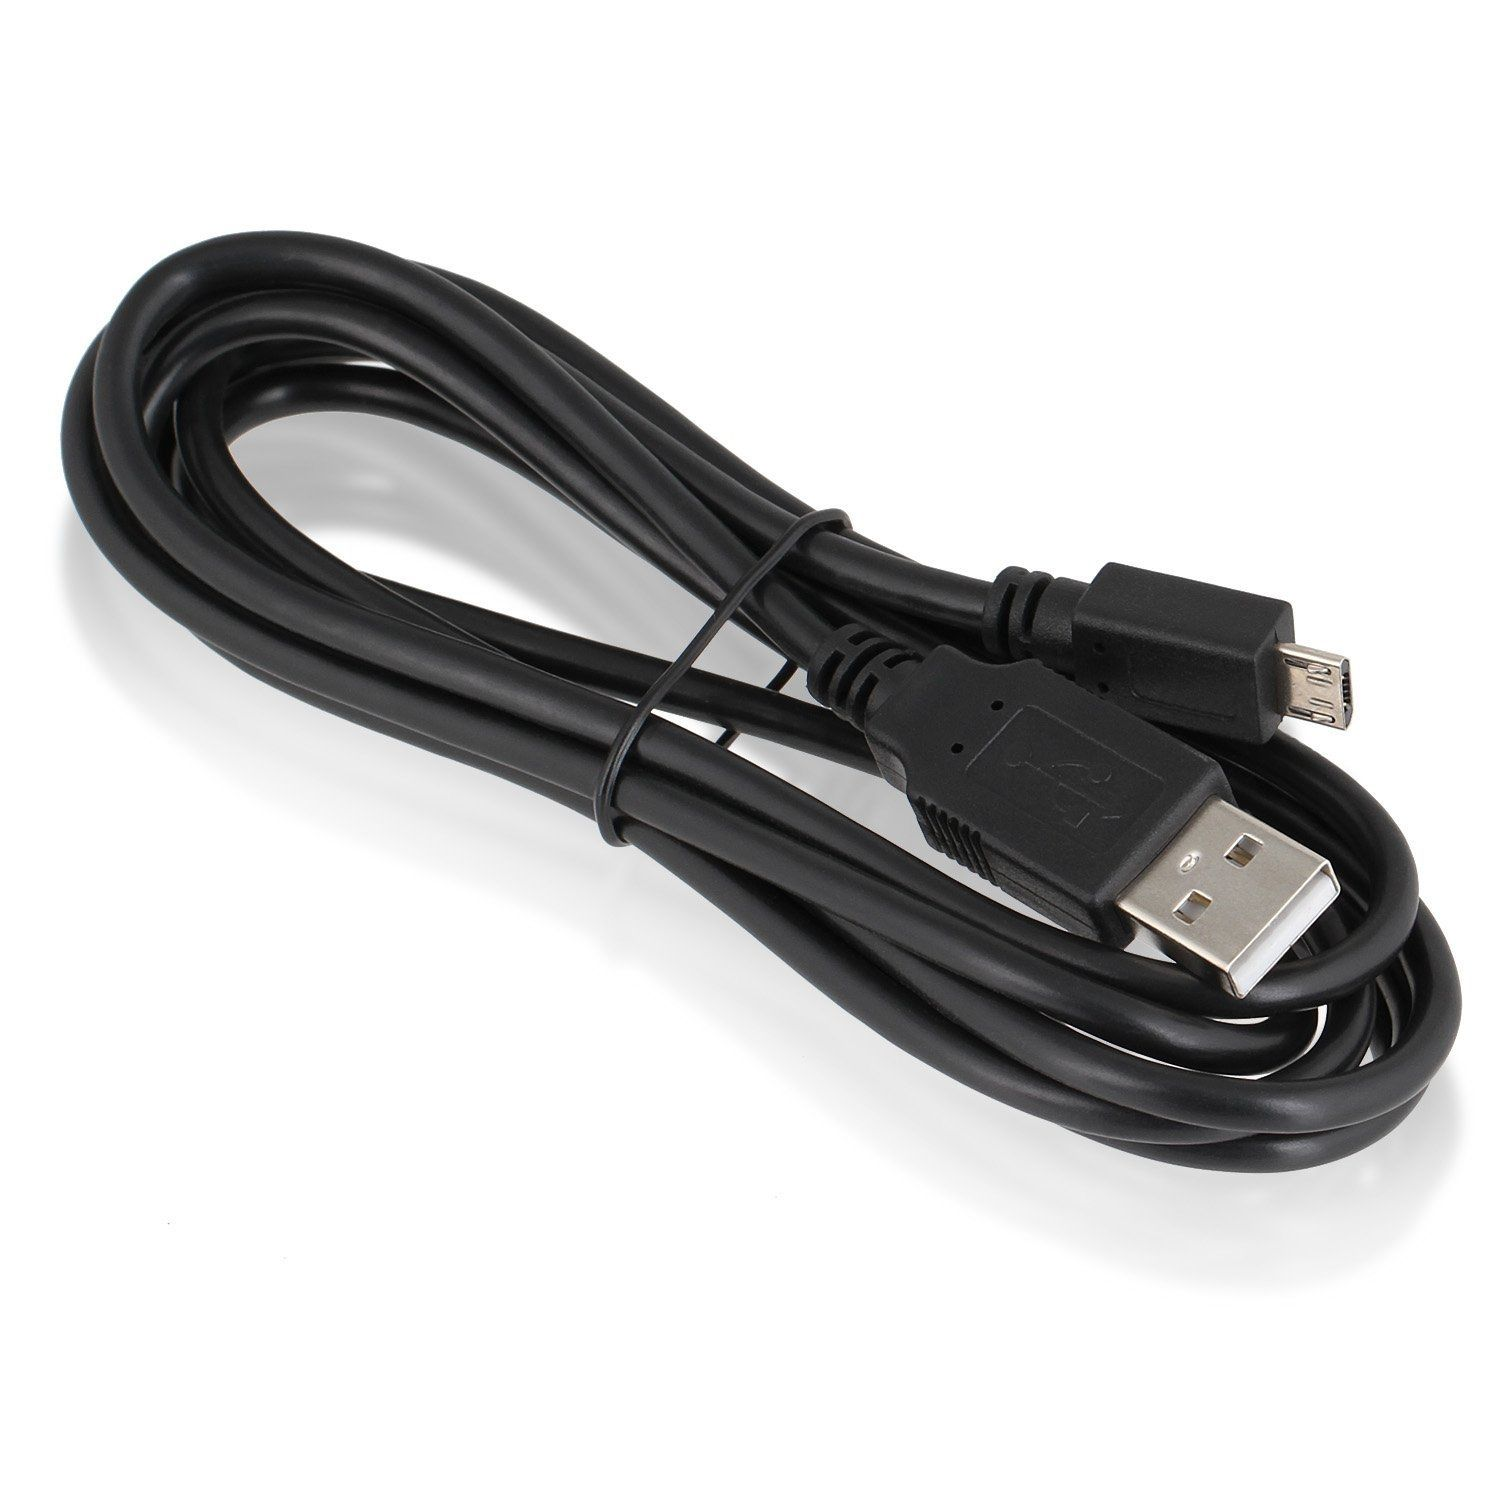 4 für Ladekabel PS4 schwarz USB Kabel DualShock MicroUSB WICKED Kabel 180cm CHILI Ladekabel, Controller Wireless 1,8 m, / Gamepad, für